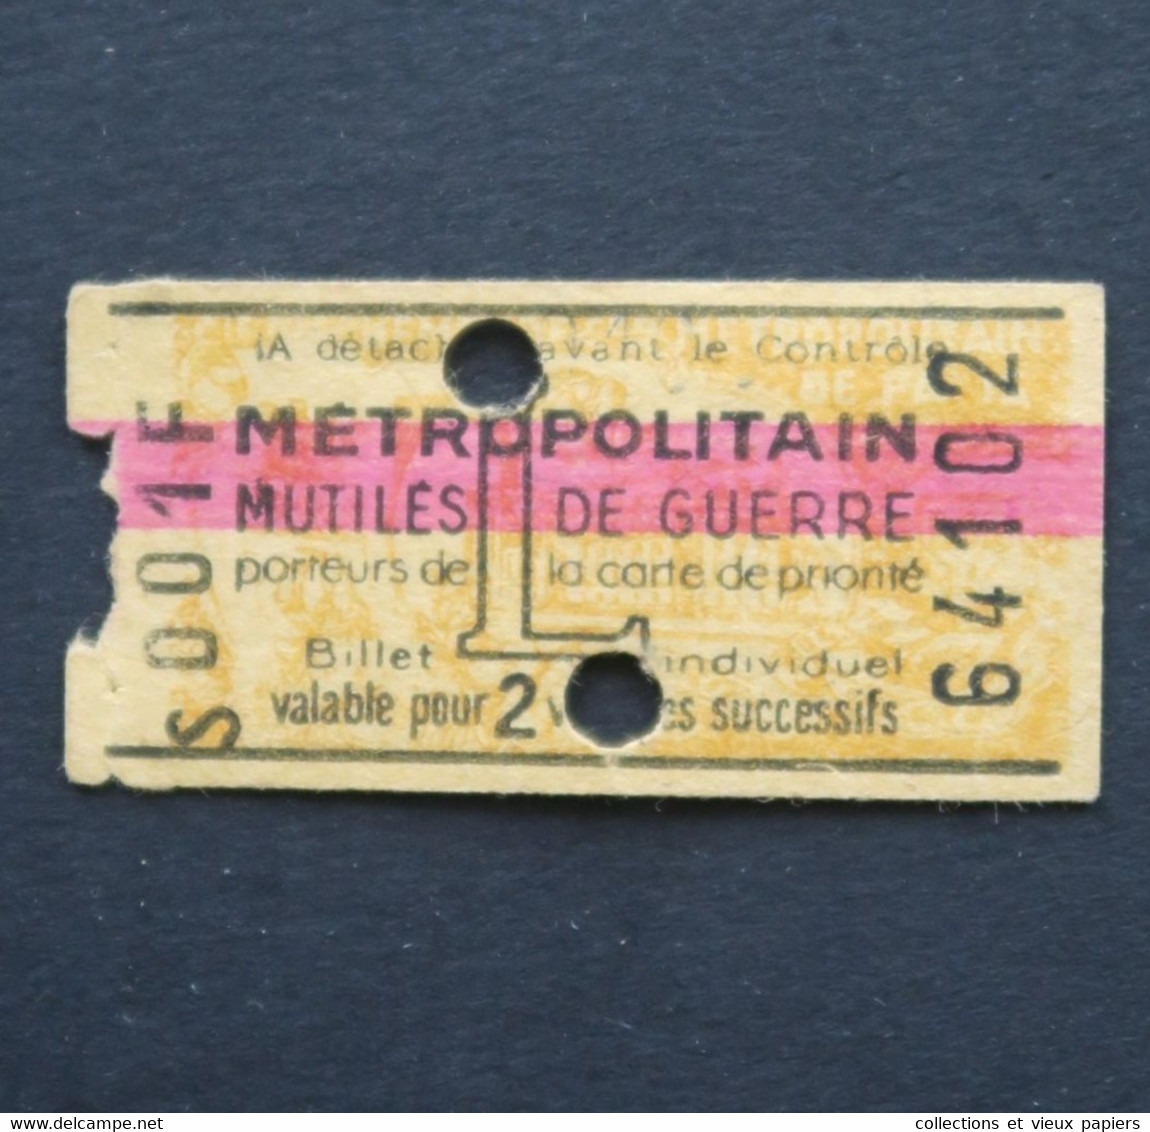 Ancien Ticket Paris S001 1946 L Mutilés De Guerre Metropolitain Railway Tickets 3 - Europe